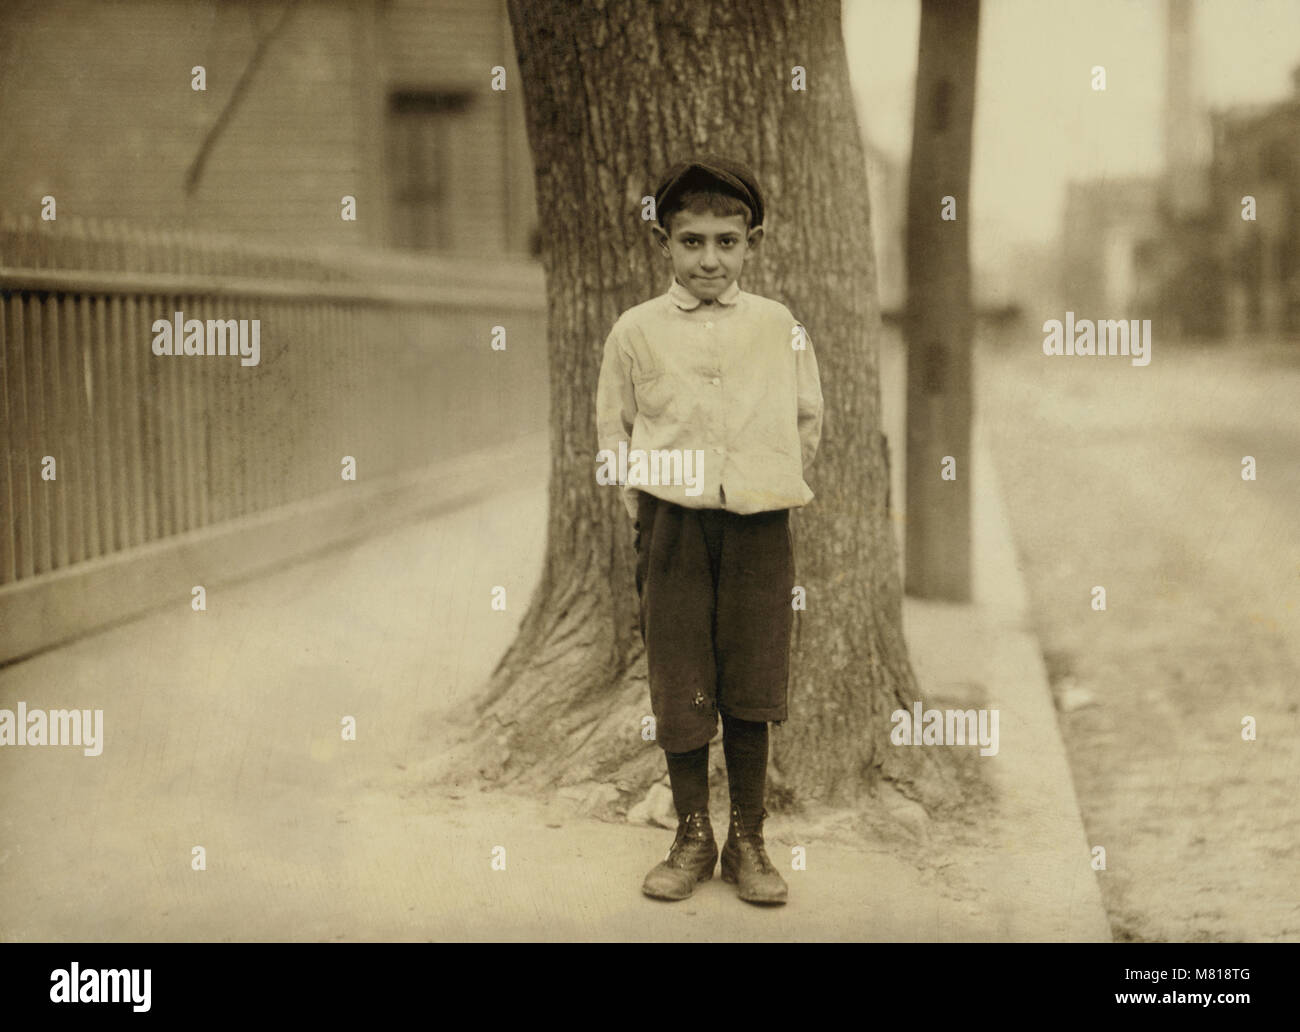 Dominic M. Giouchino, 8 ans, Newsie, Un portrait, Providence, Rhode Island, USA, Lewis Hine pour Comité nationale sur le travail des enfants, Novembre 1912 Banque D'Images